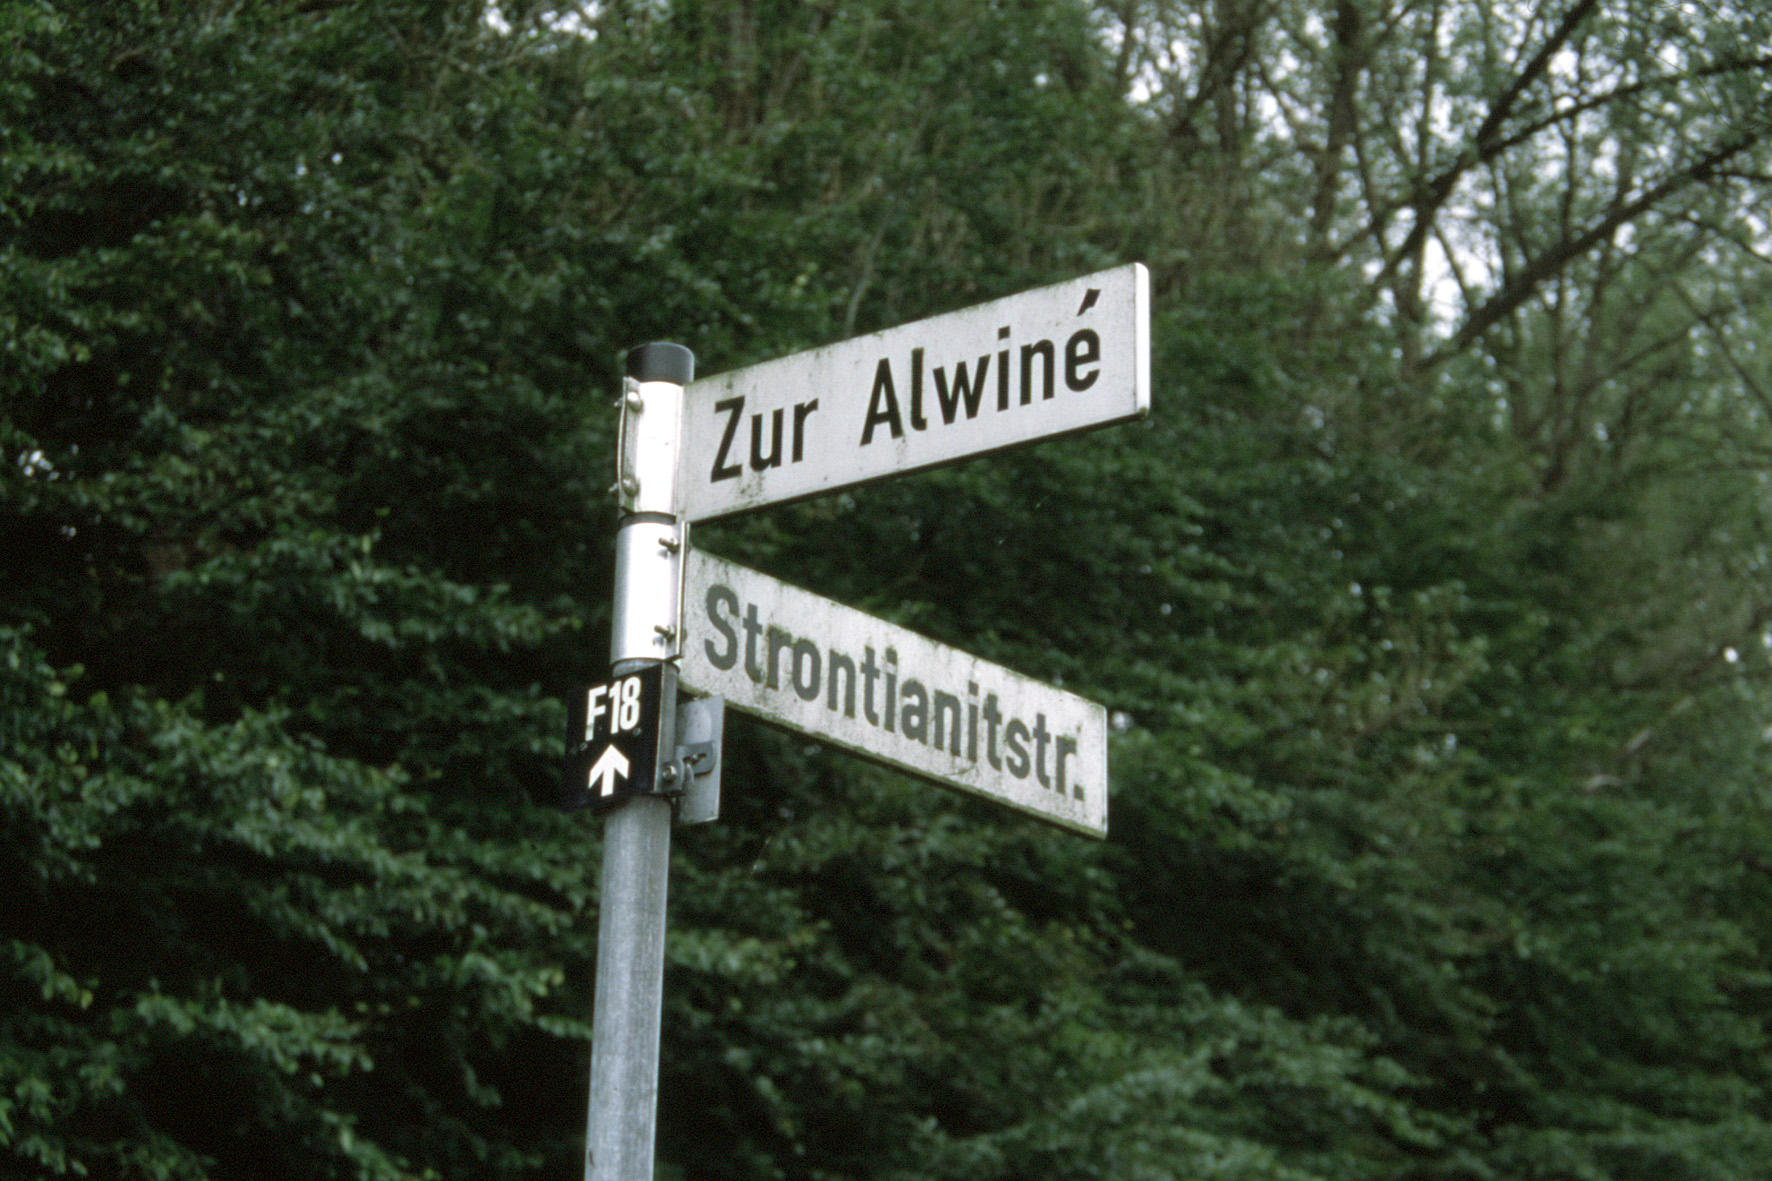 Straßenschilder an Kreuzung "Strontianitstraße" und "Zur Alwine"